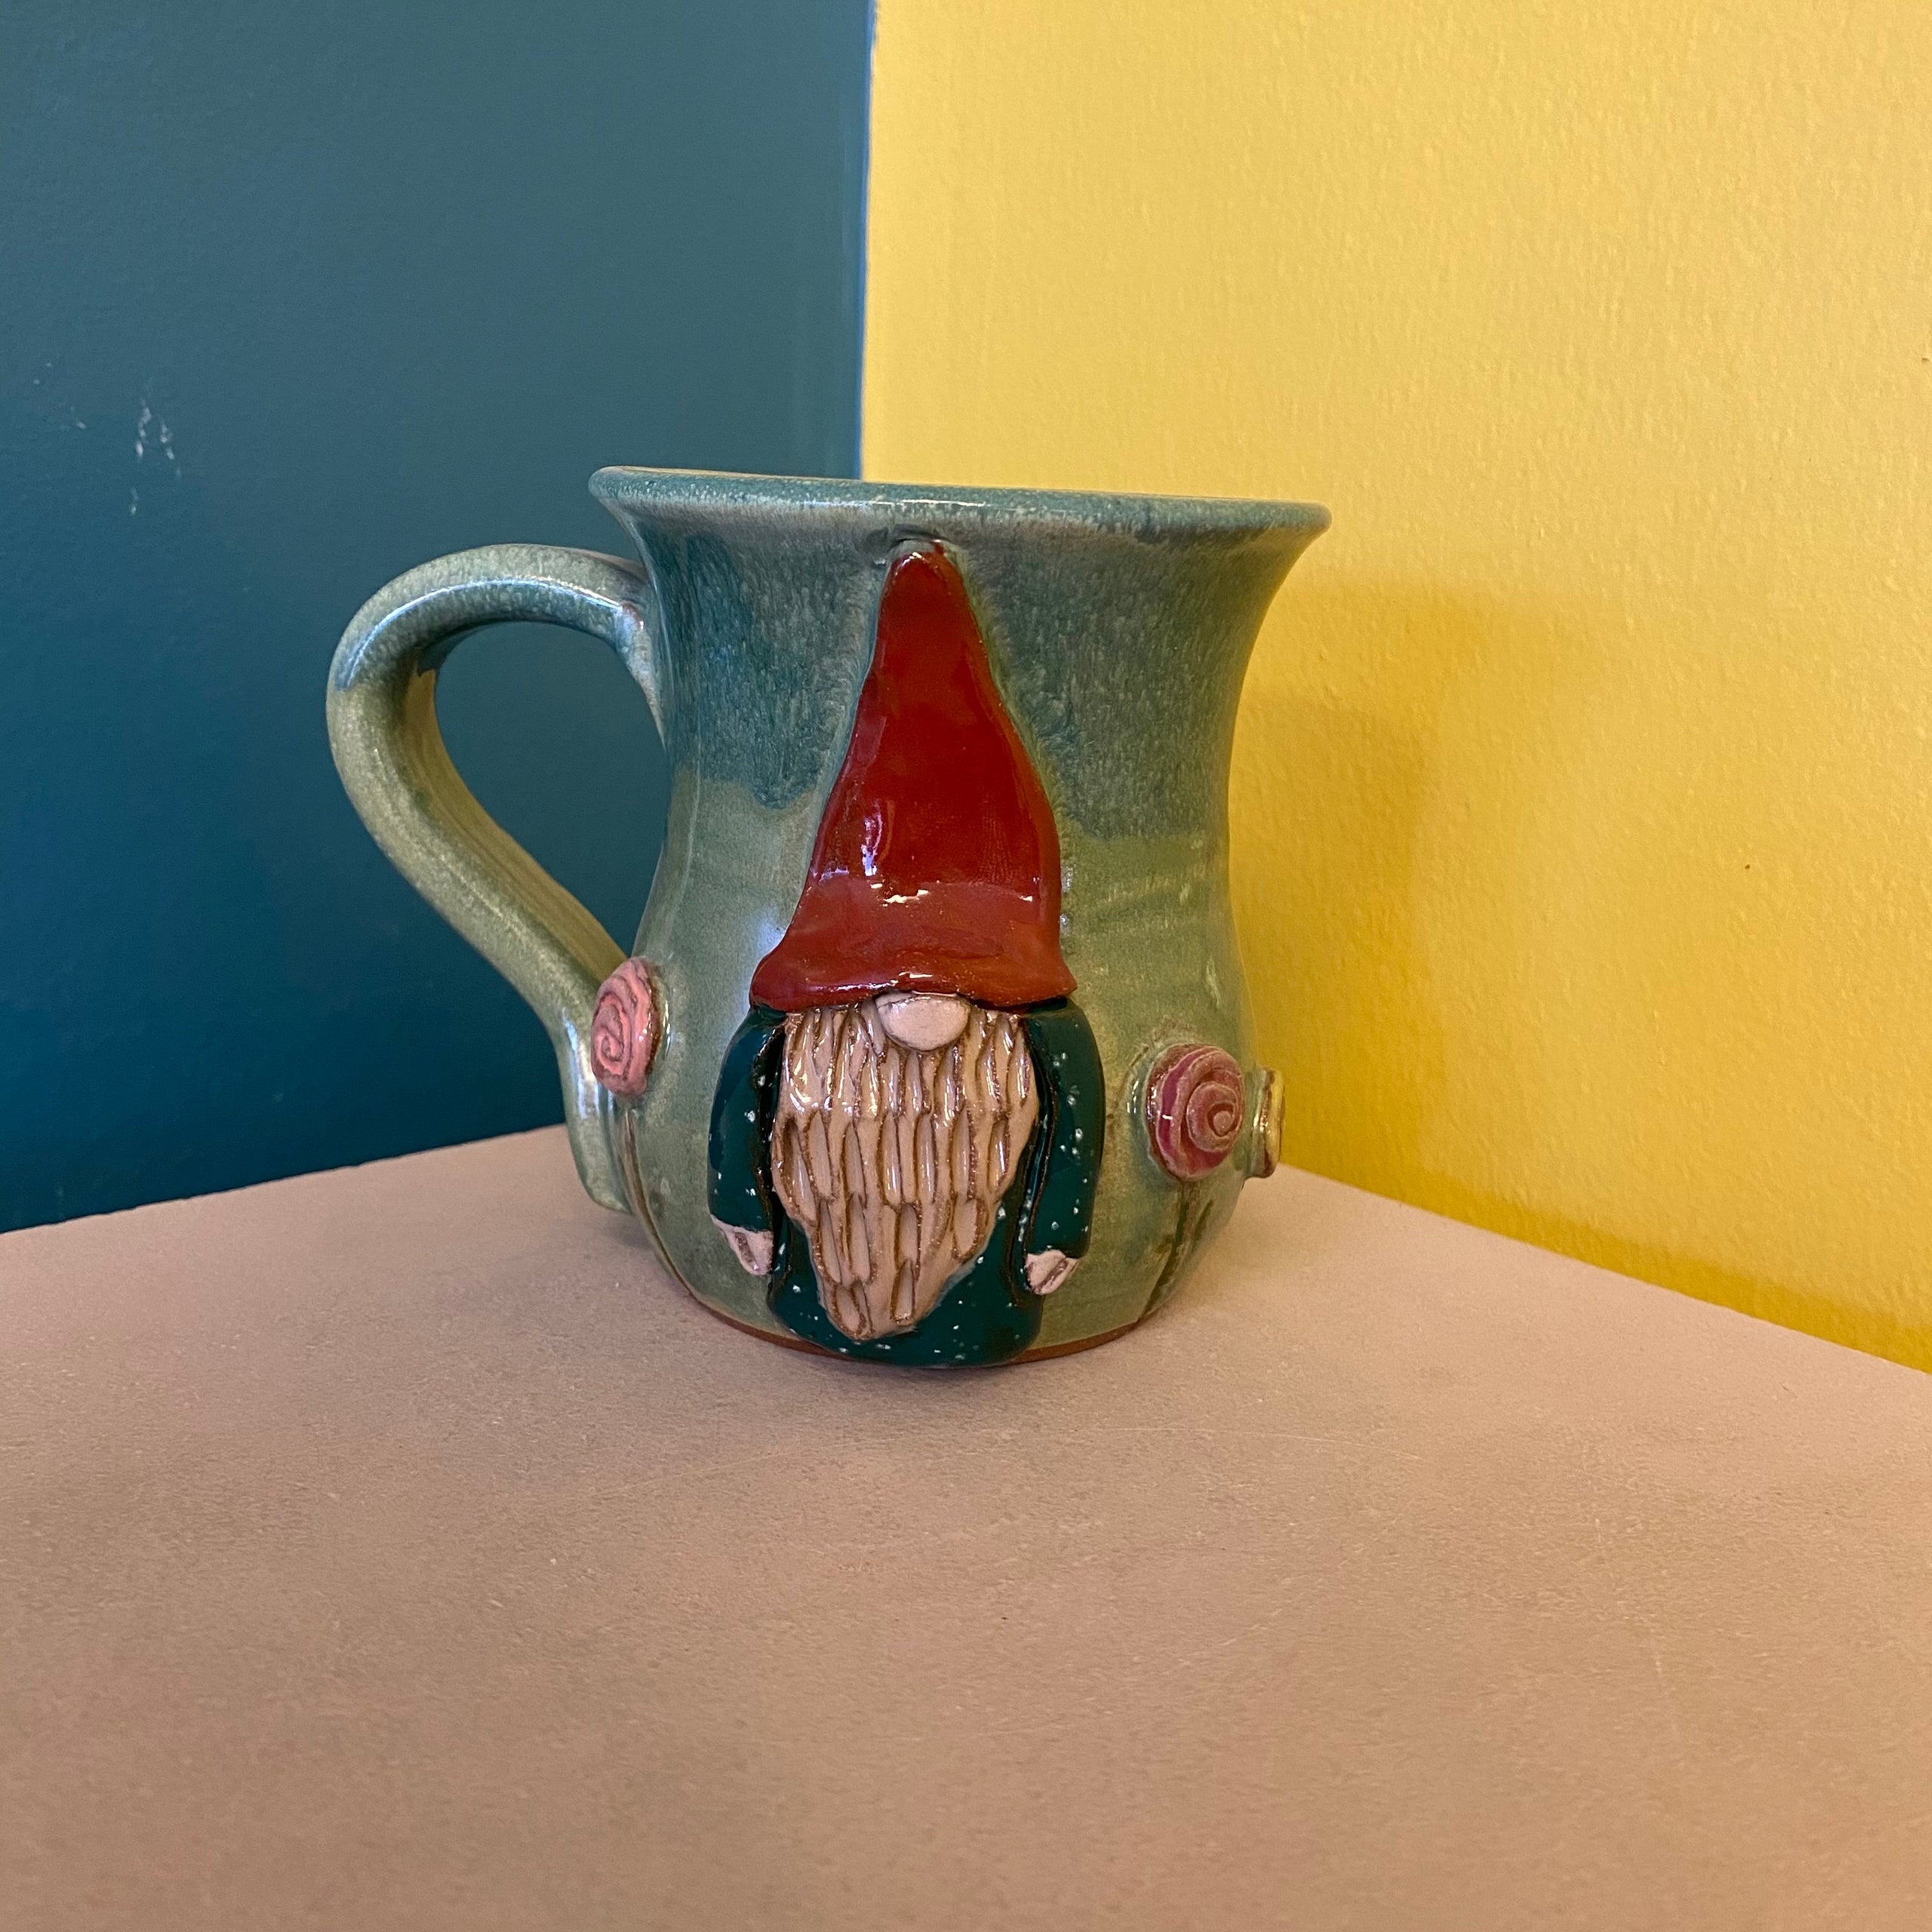 Gnome with Mushrooms Mug